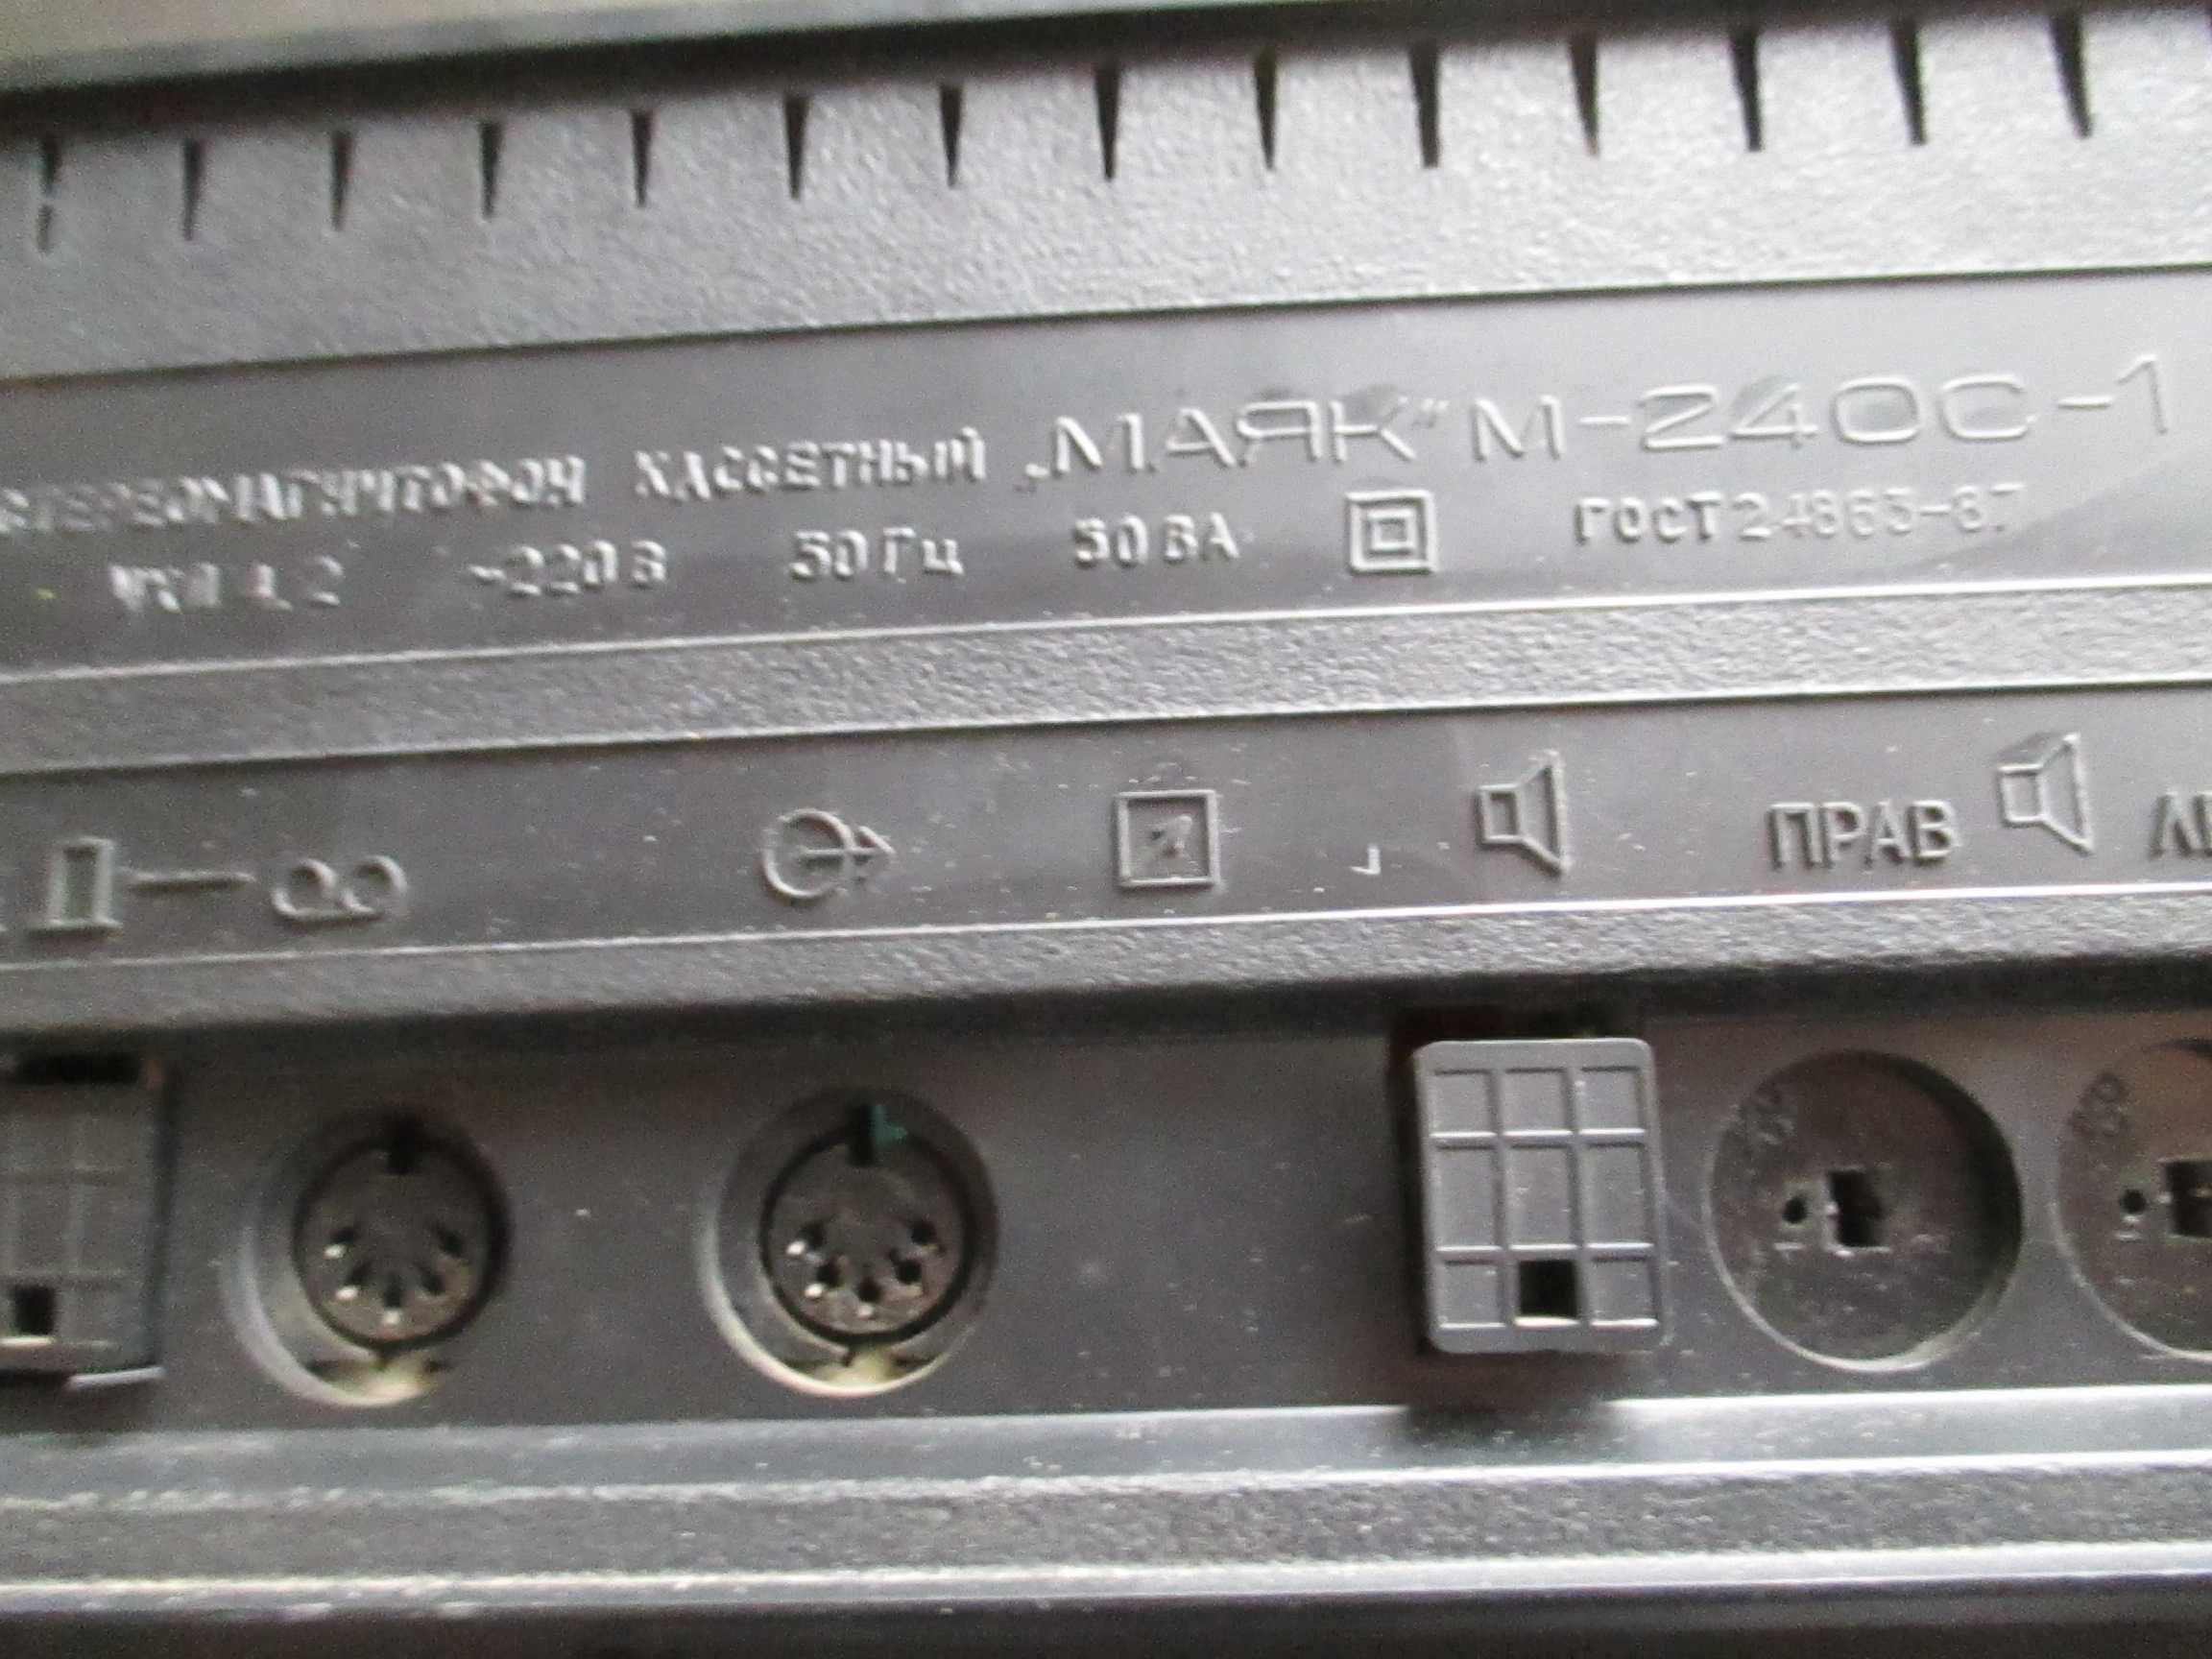 Магнитофон Маяк 240С-1 по запчастям